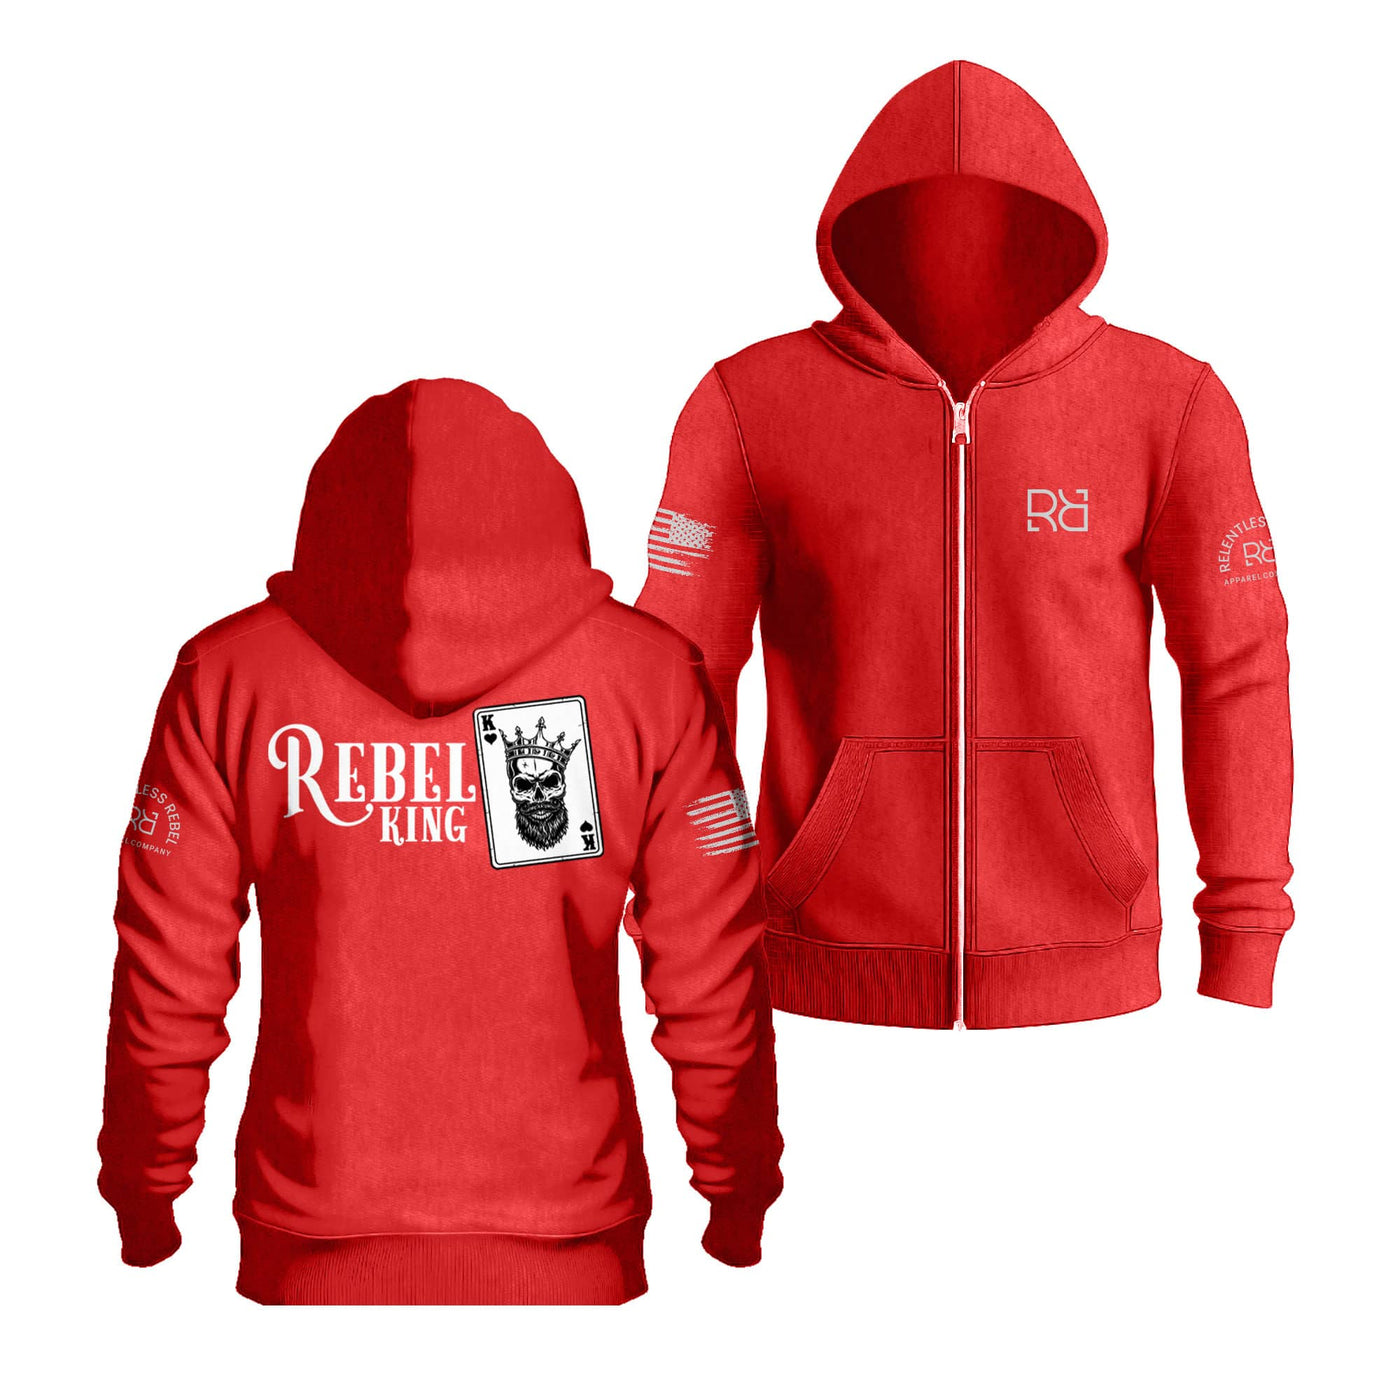 Red Rebel King Sleeve & Back Design Zip Up Hoodie